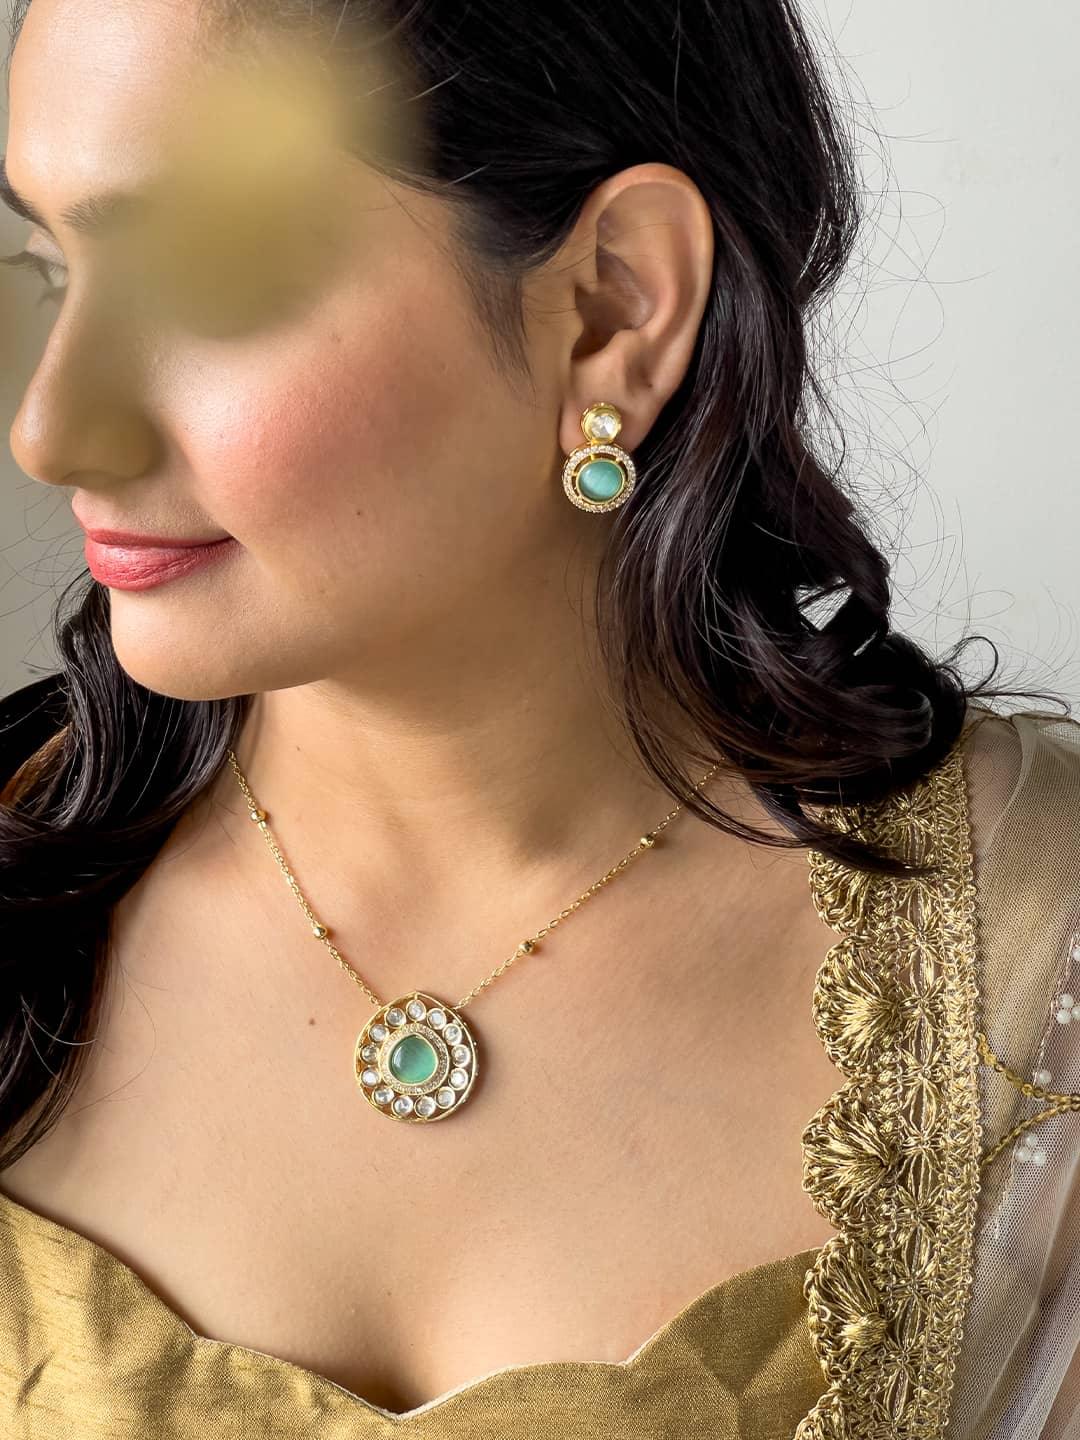 Ishhaara Nakshatra Pendant Necklace